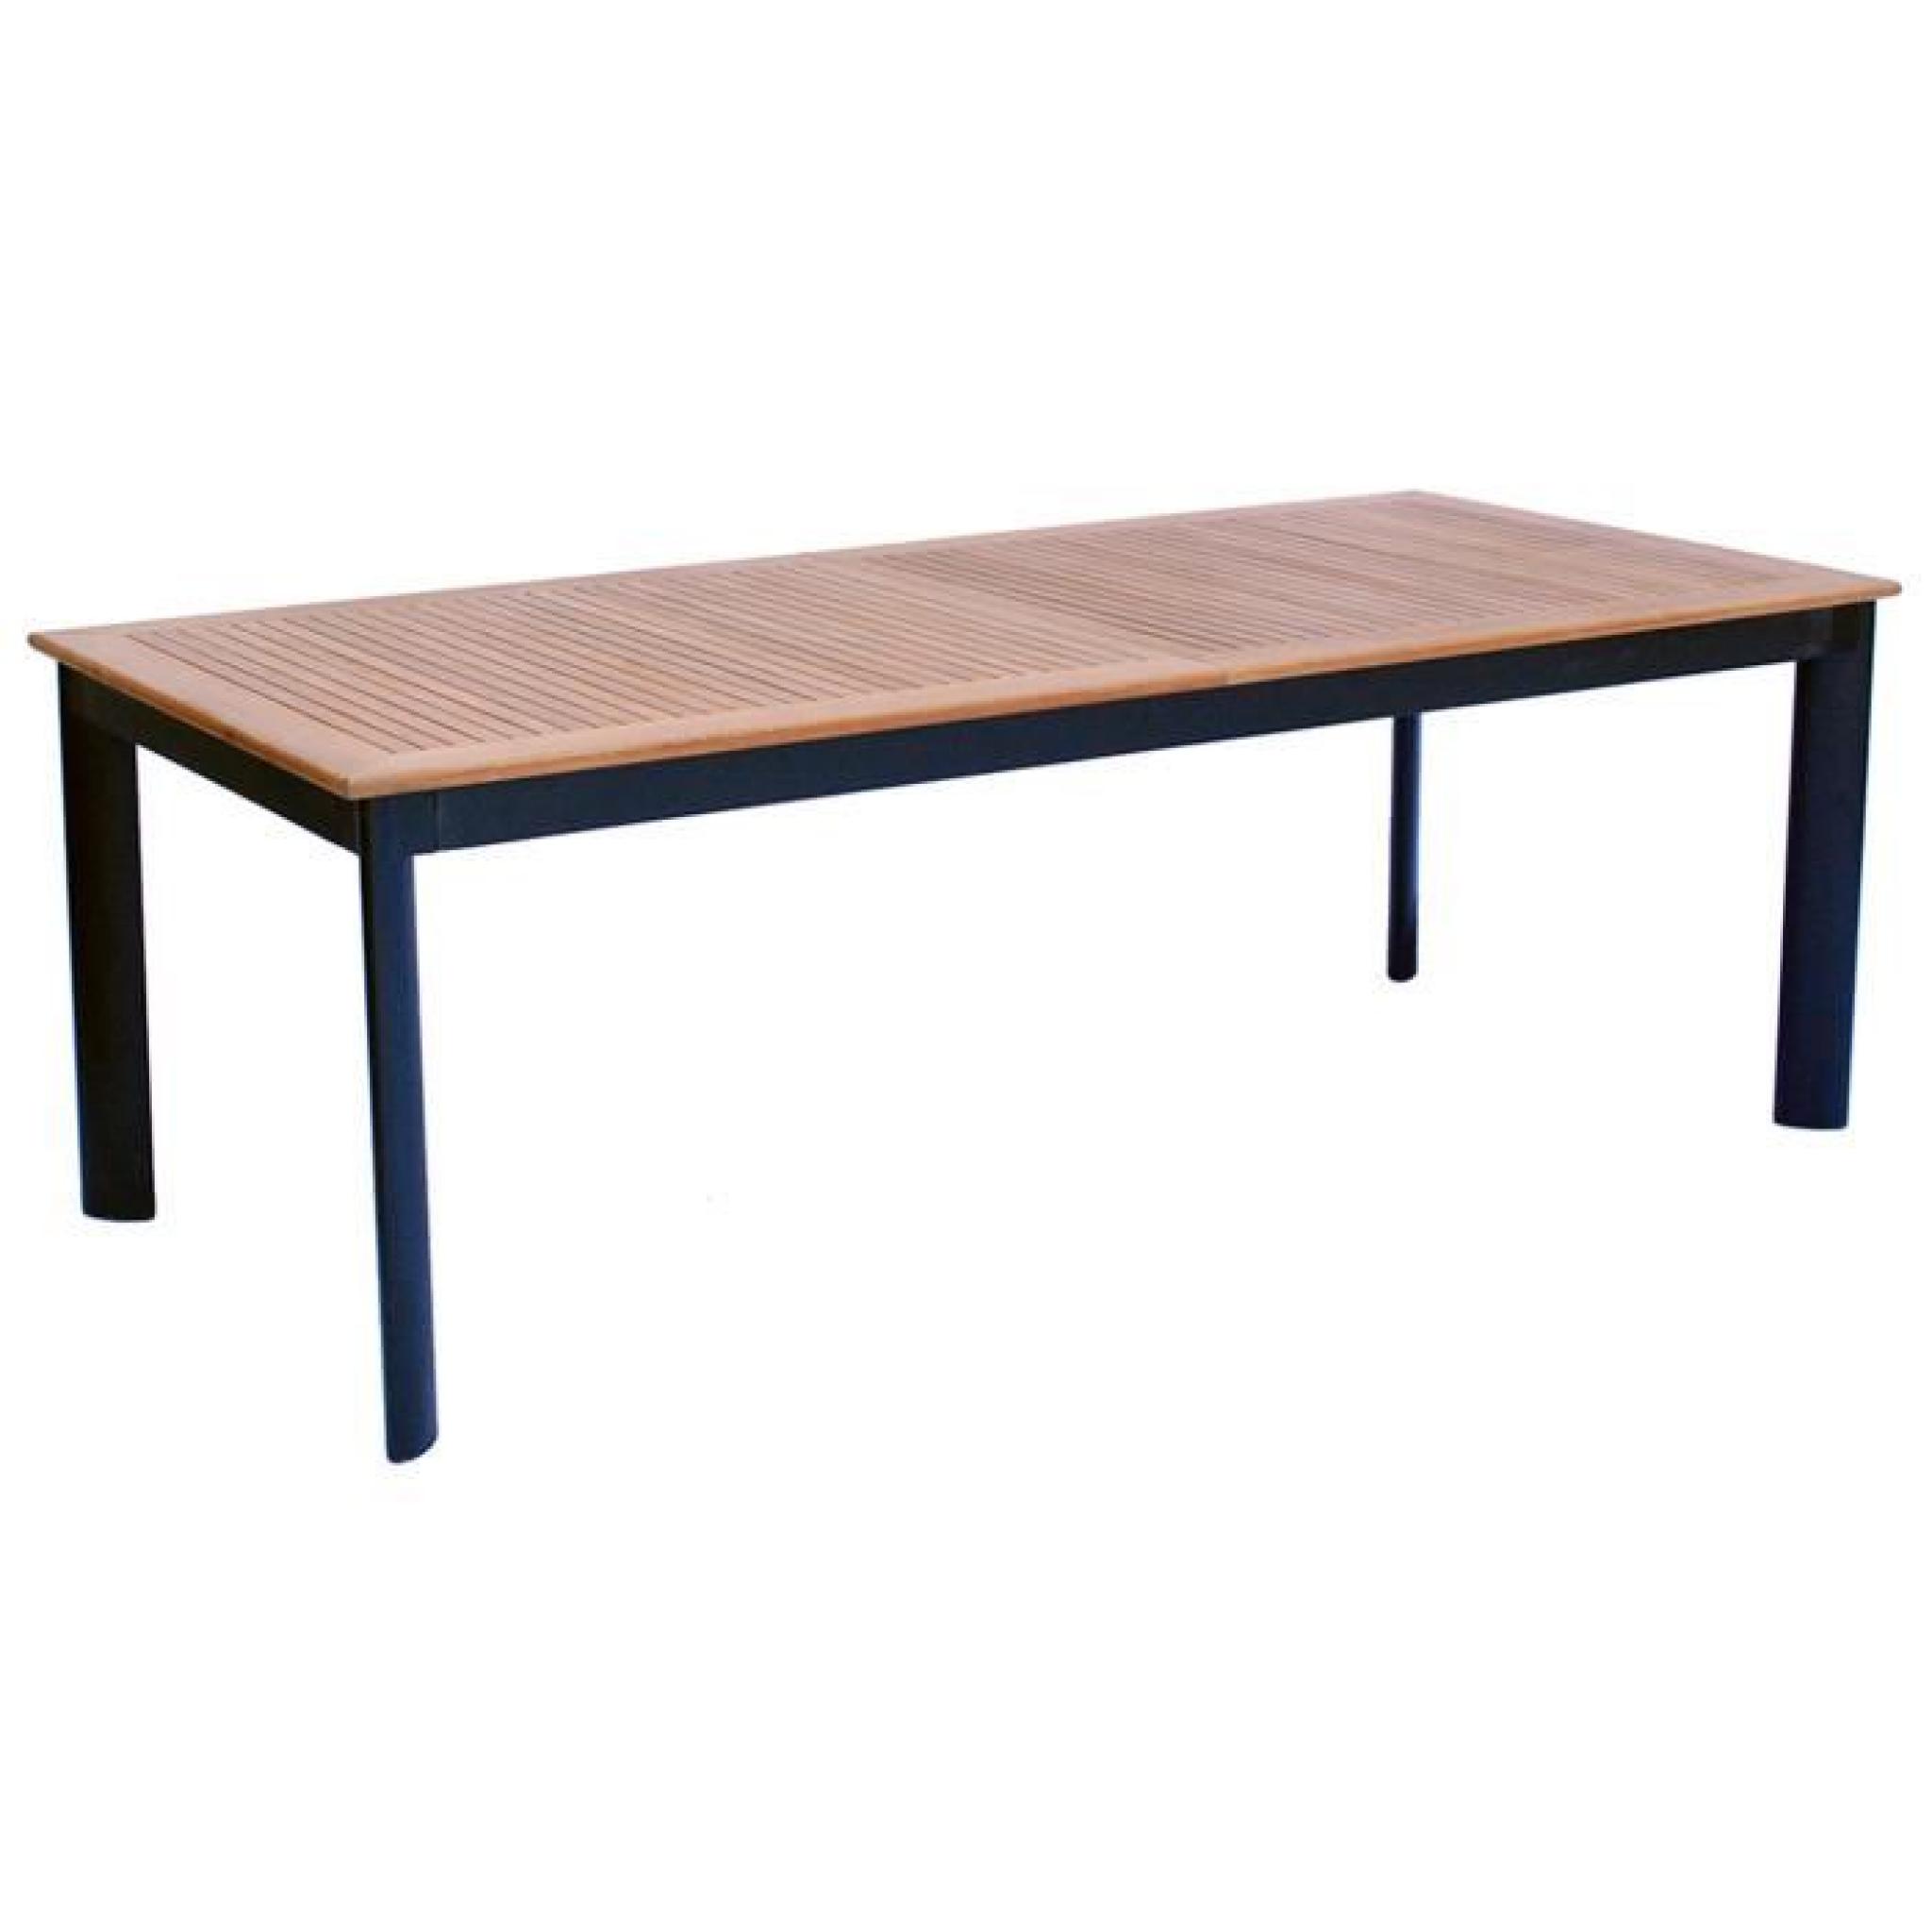 Table extensible de jardin en aluminium noir et bois teck -12 pers - Dim : 220-320 x 100 x 74 cm